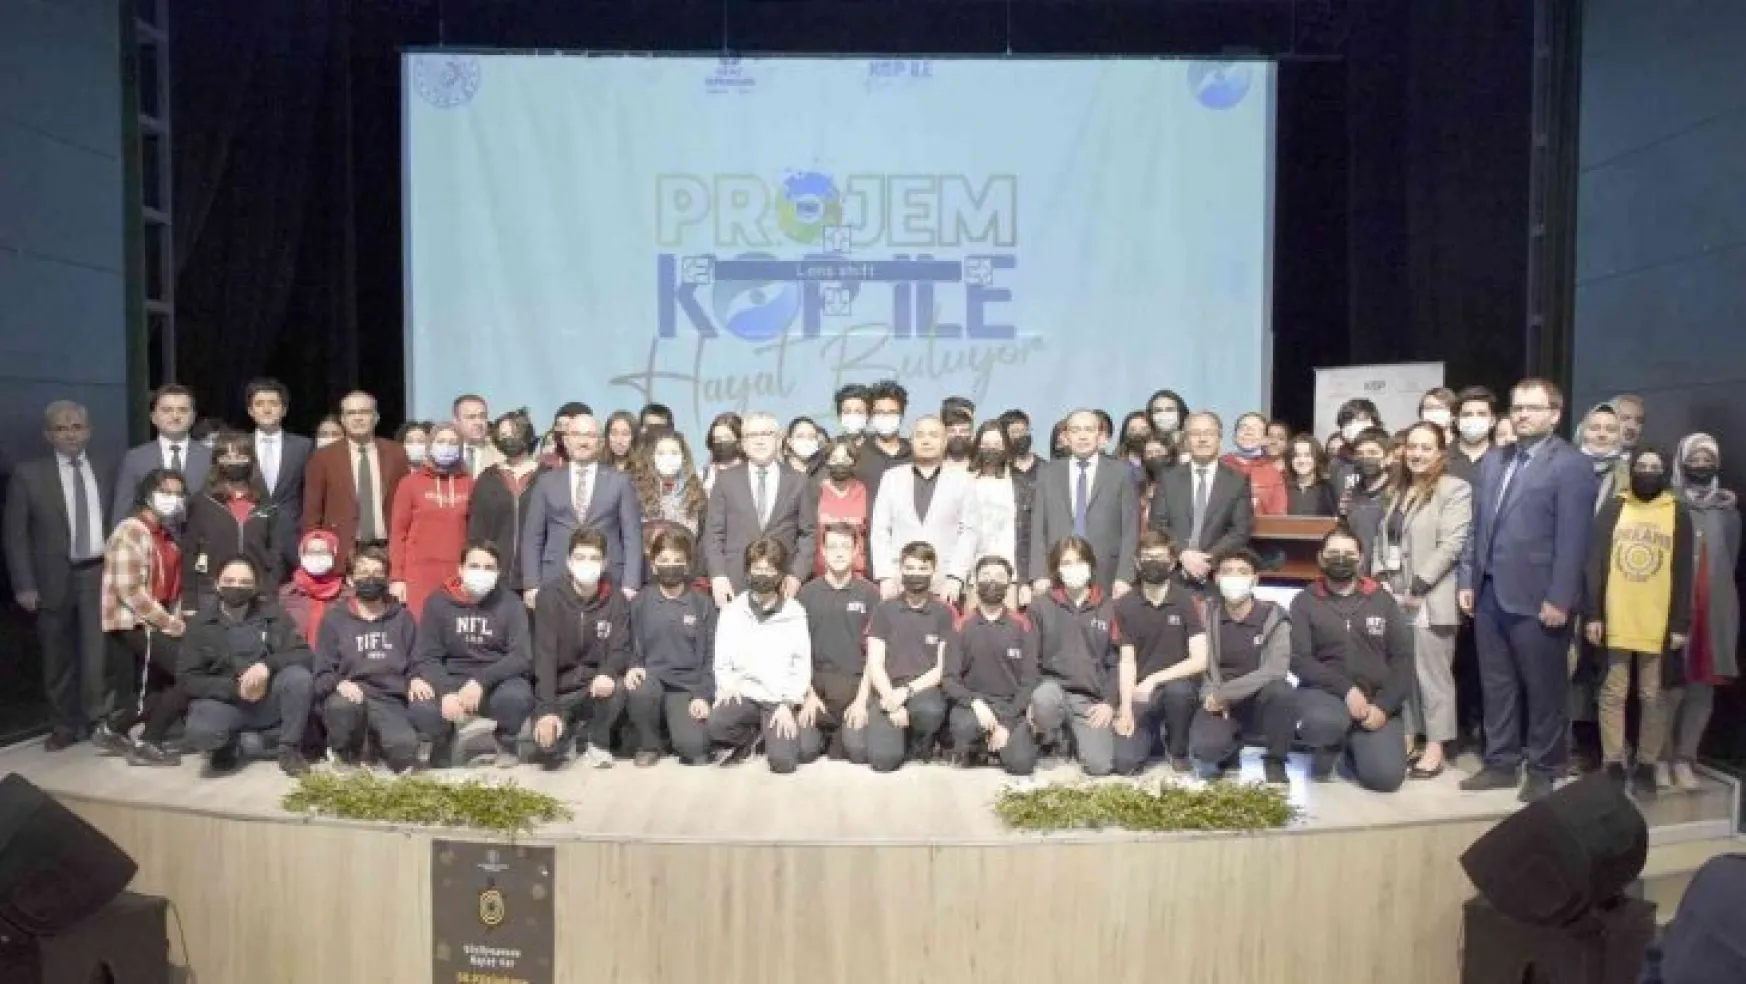 Projem KOP İle Hayat Buluyor yarışması tanıtımı Niğde'de yapıldı